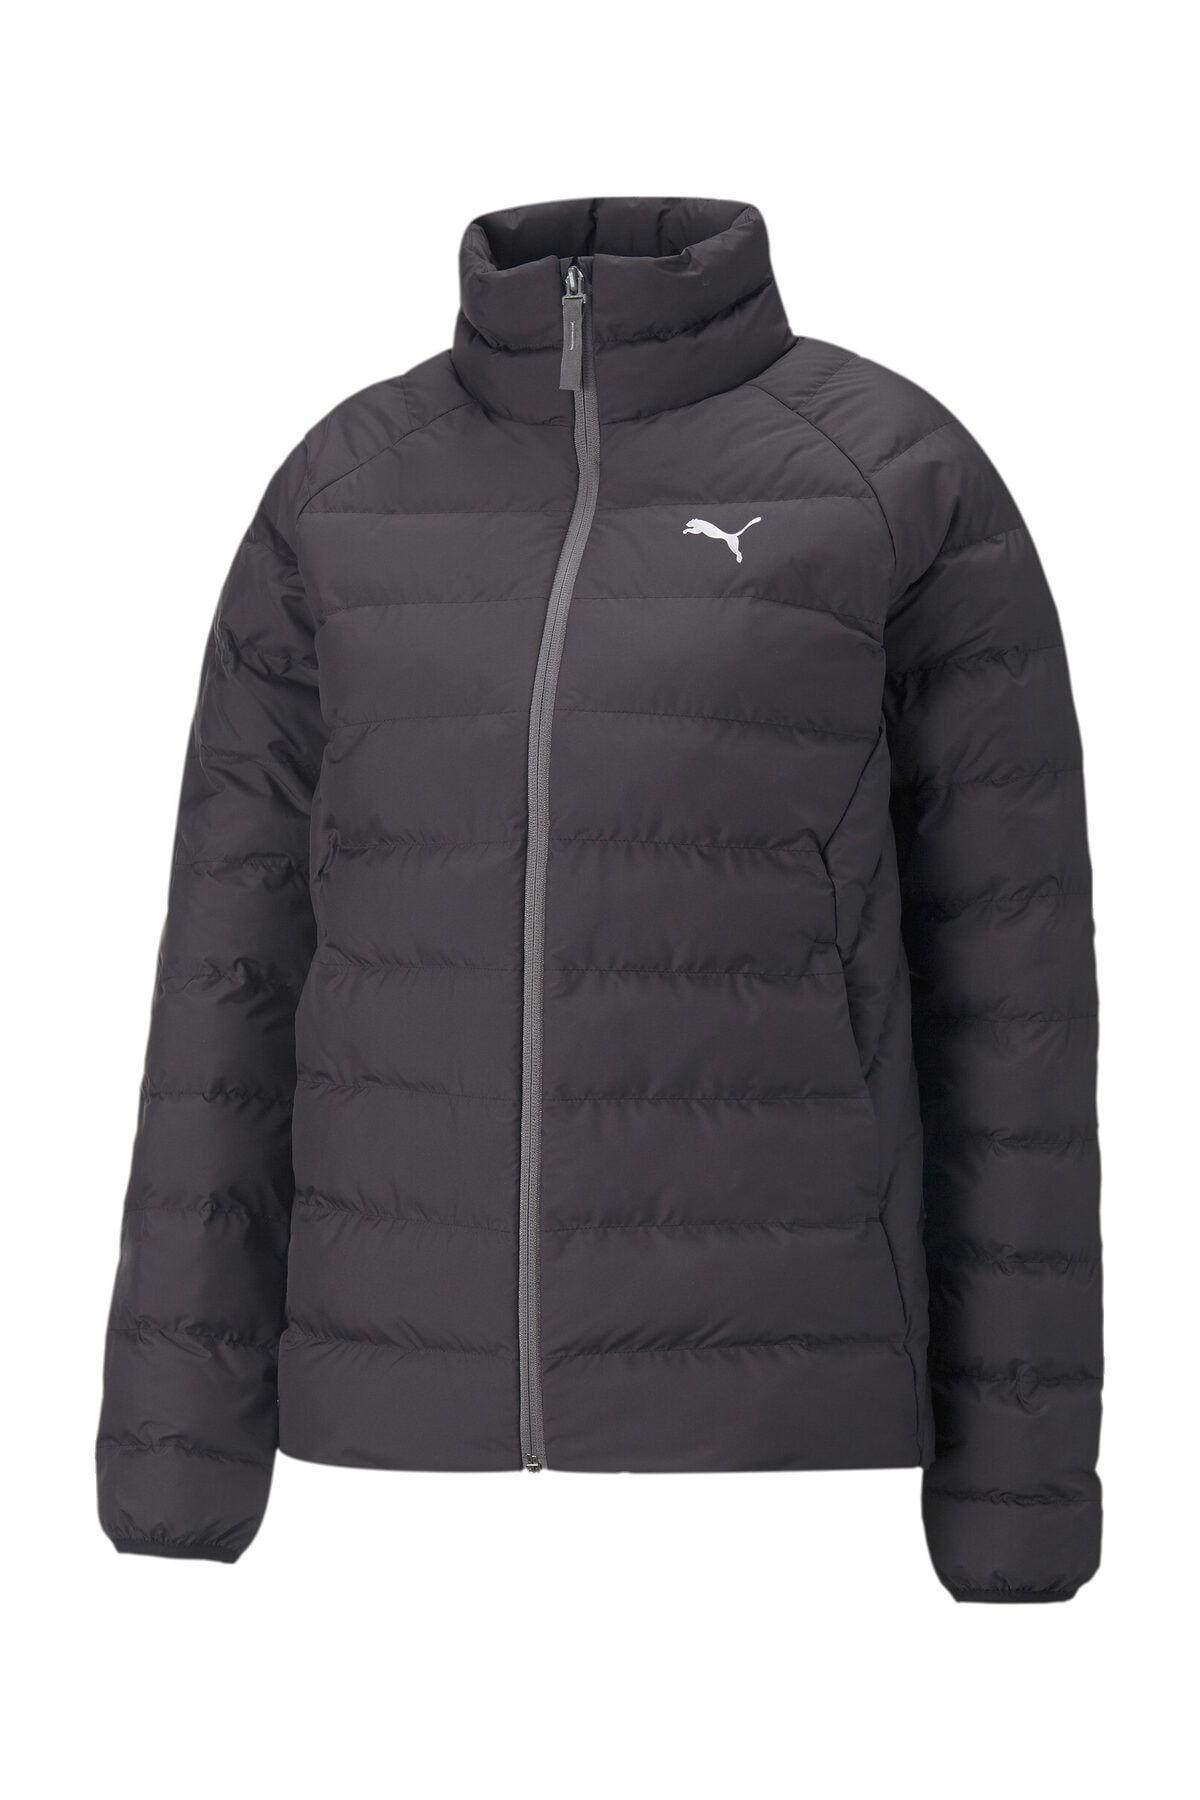 Active Jacket Trendyol Polyball Sports Puma - Black - Coat-Jacket